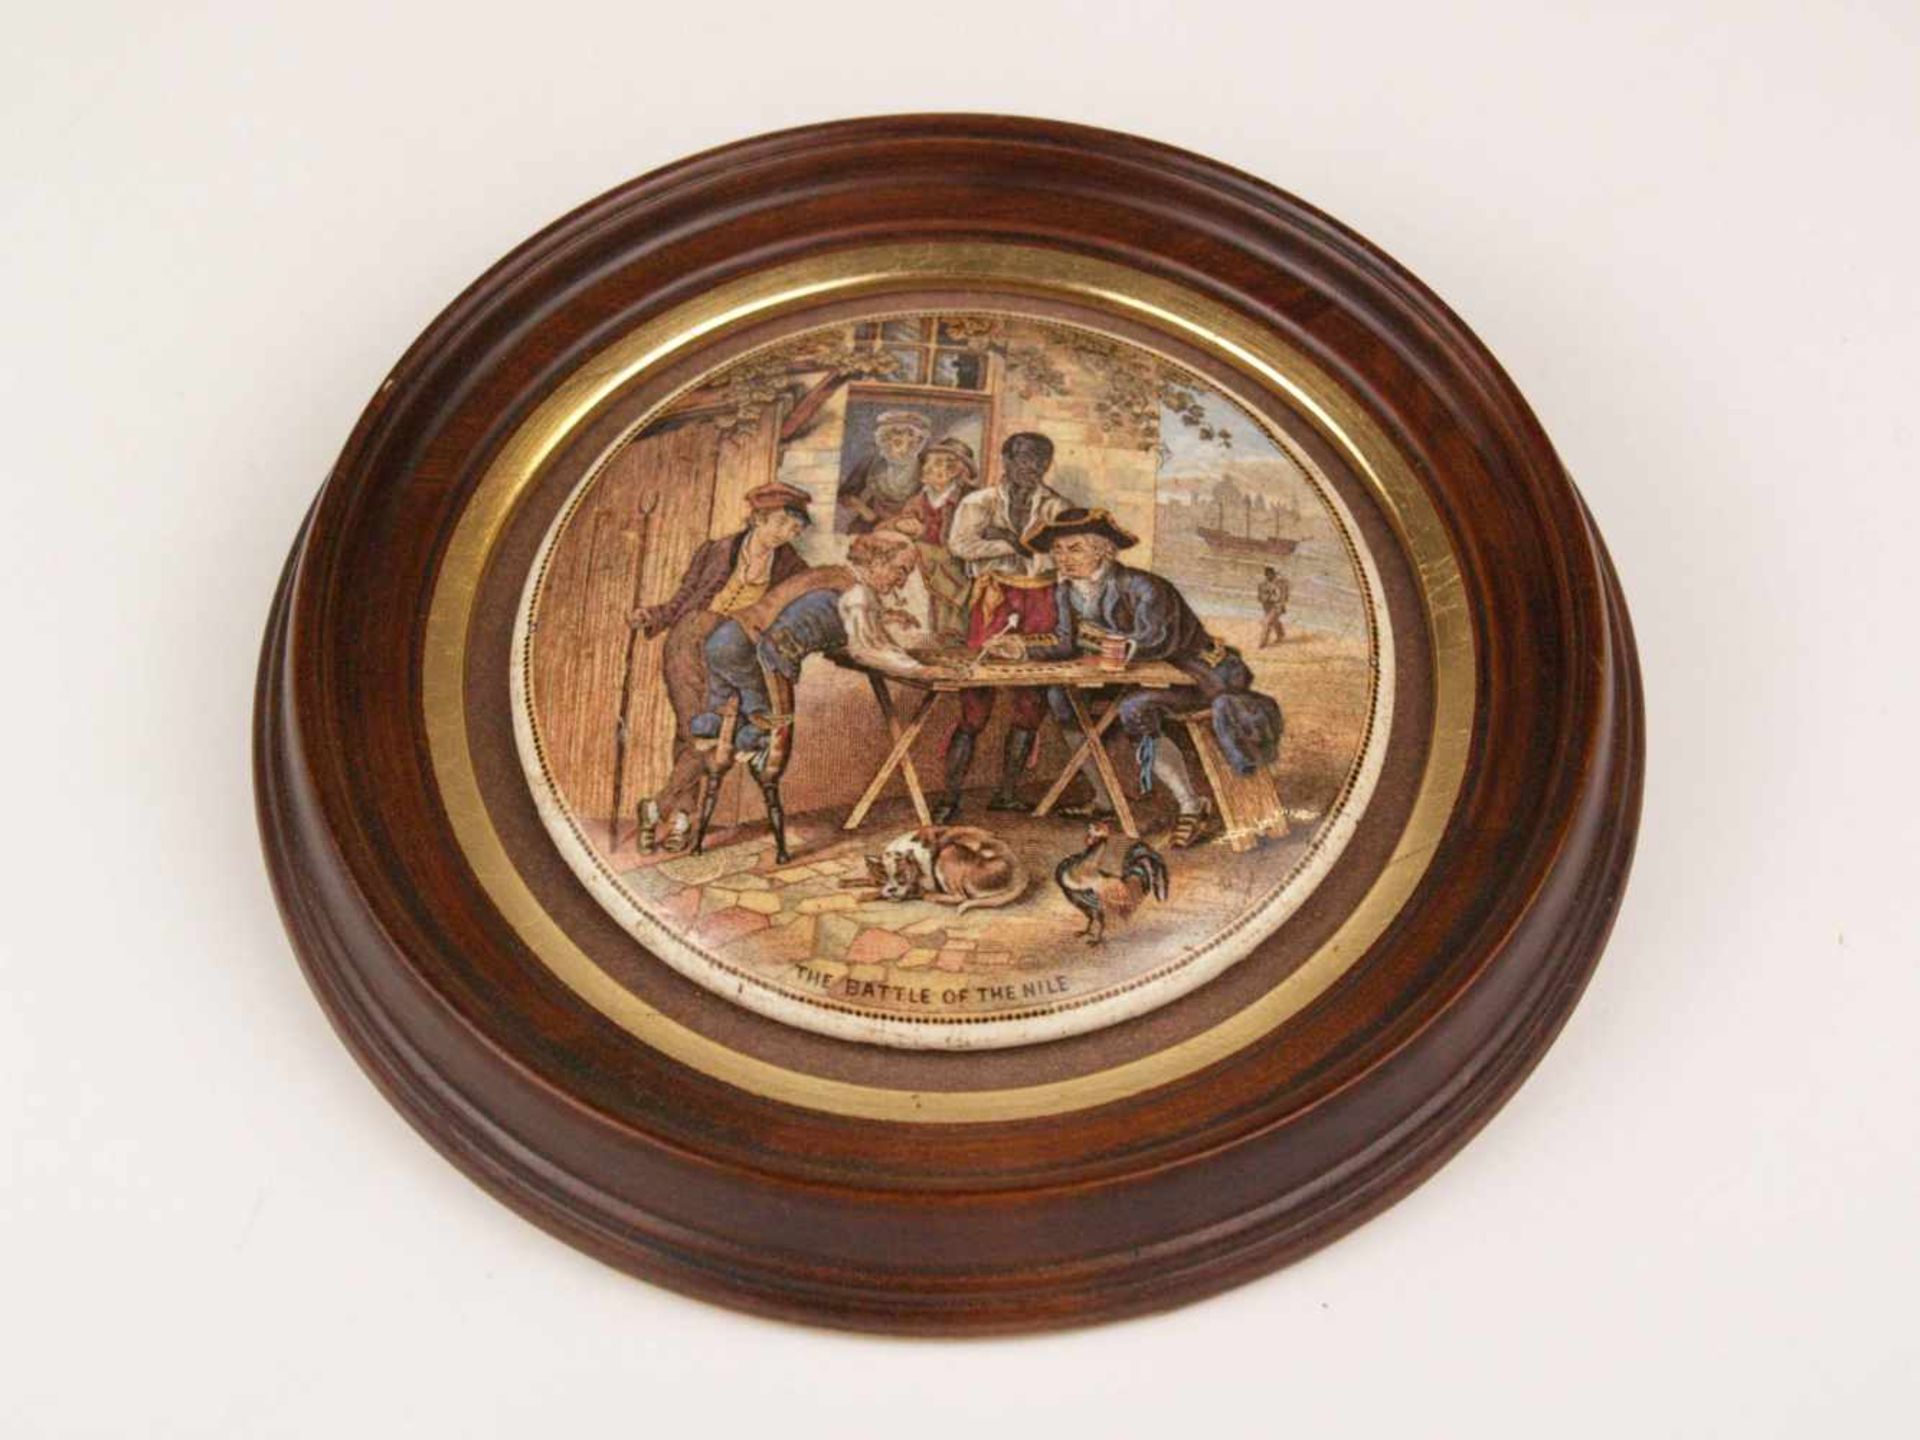 Viktorianischer Keramikdeckel - England 19.Jh., leicht gewölbter Gefäßdeckel mit farbiger